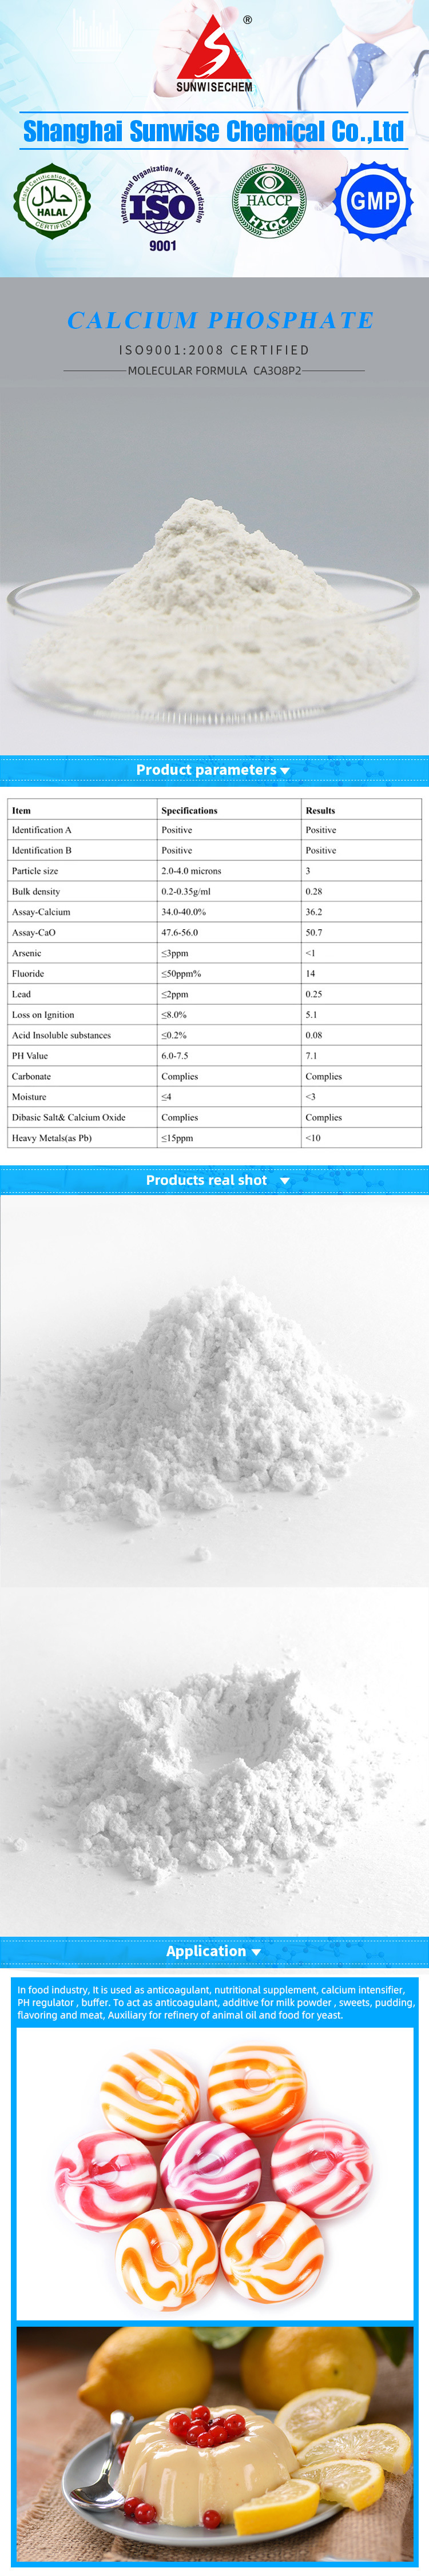 食品级TPC是磷酸三钙滑石粉纳米尺寸7758-87-4